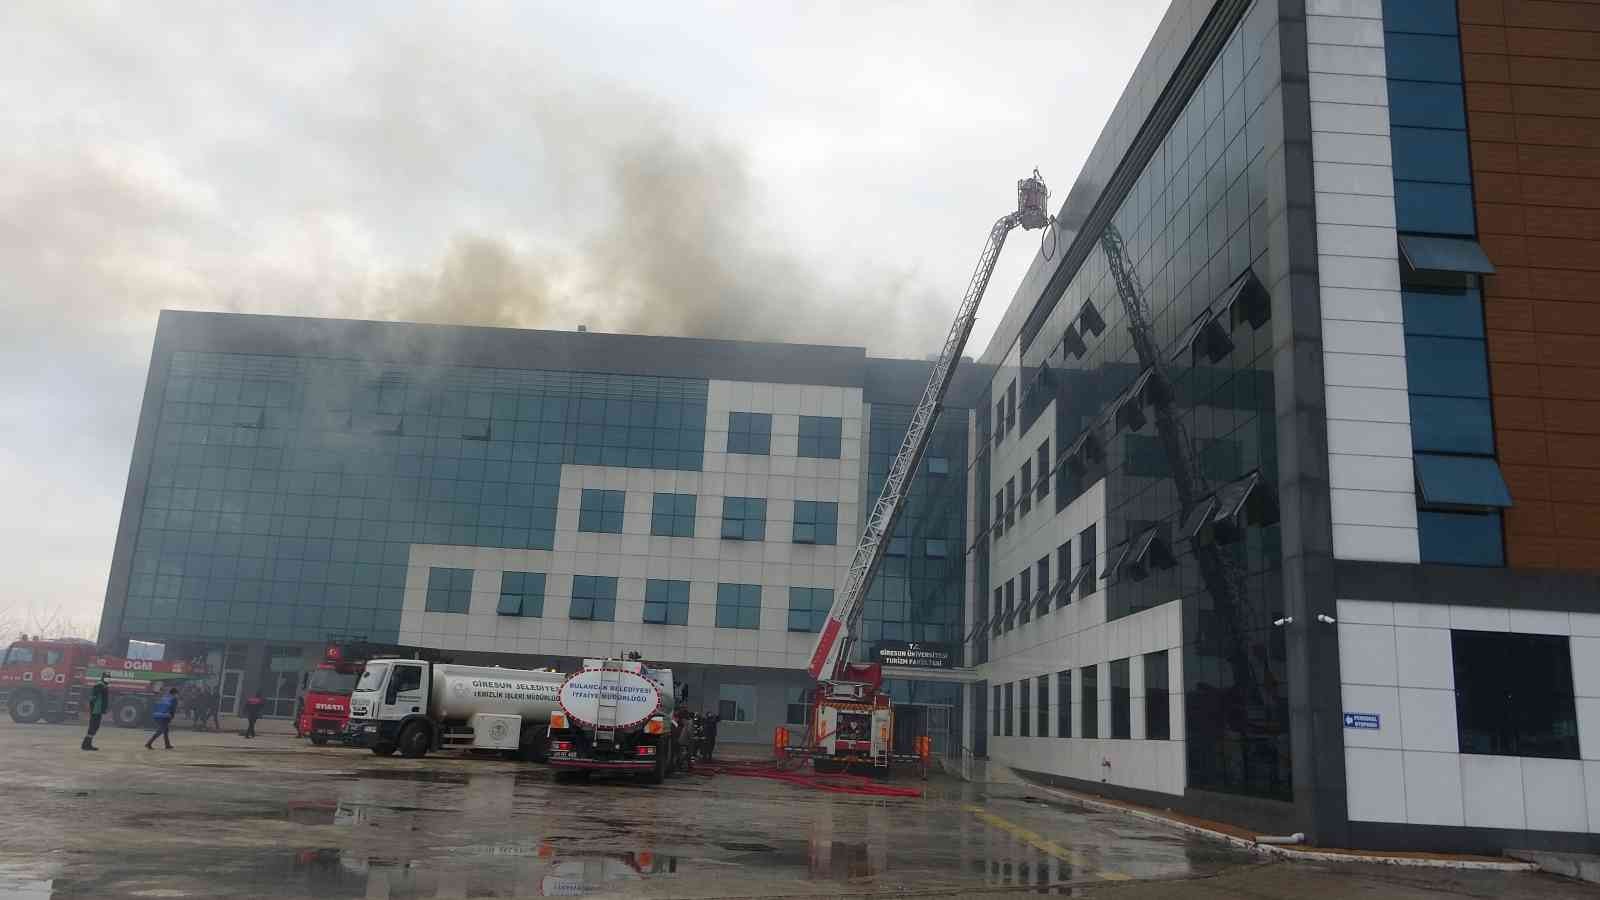 Giresun Üniversitesinde  korkutan yangın #giresun